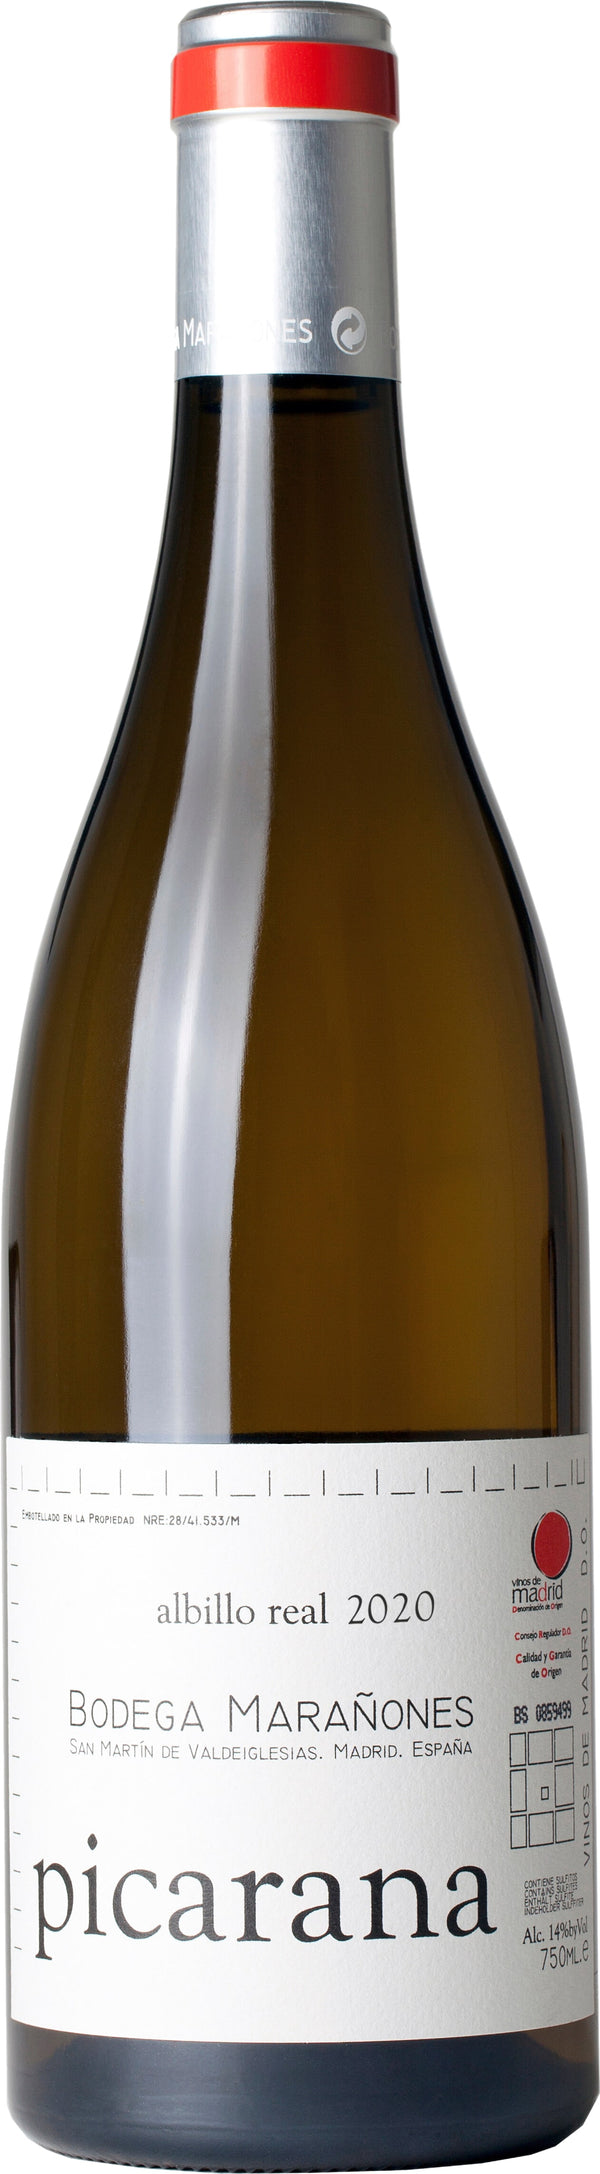 Bodega Maranones Picarana 2020 6x75cl - Just Wines 